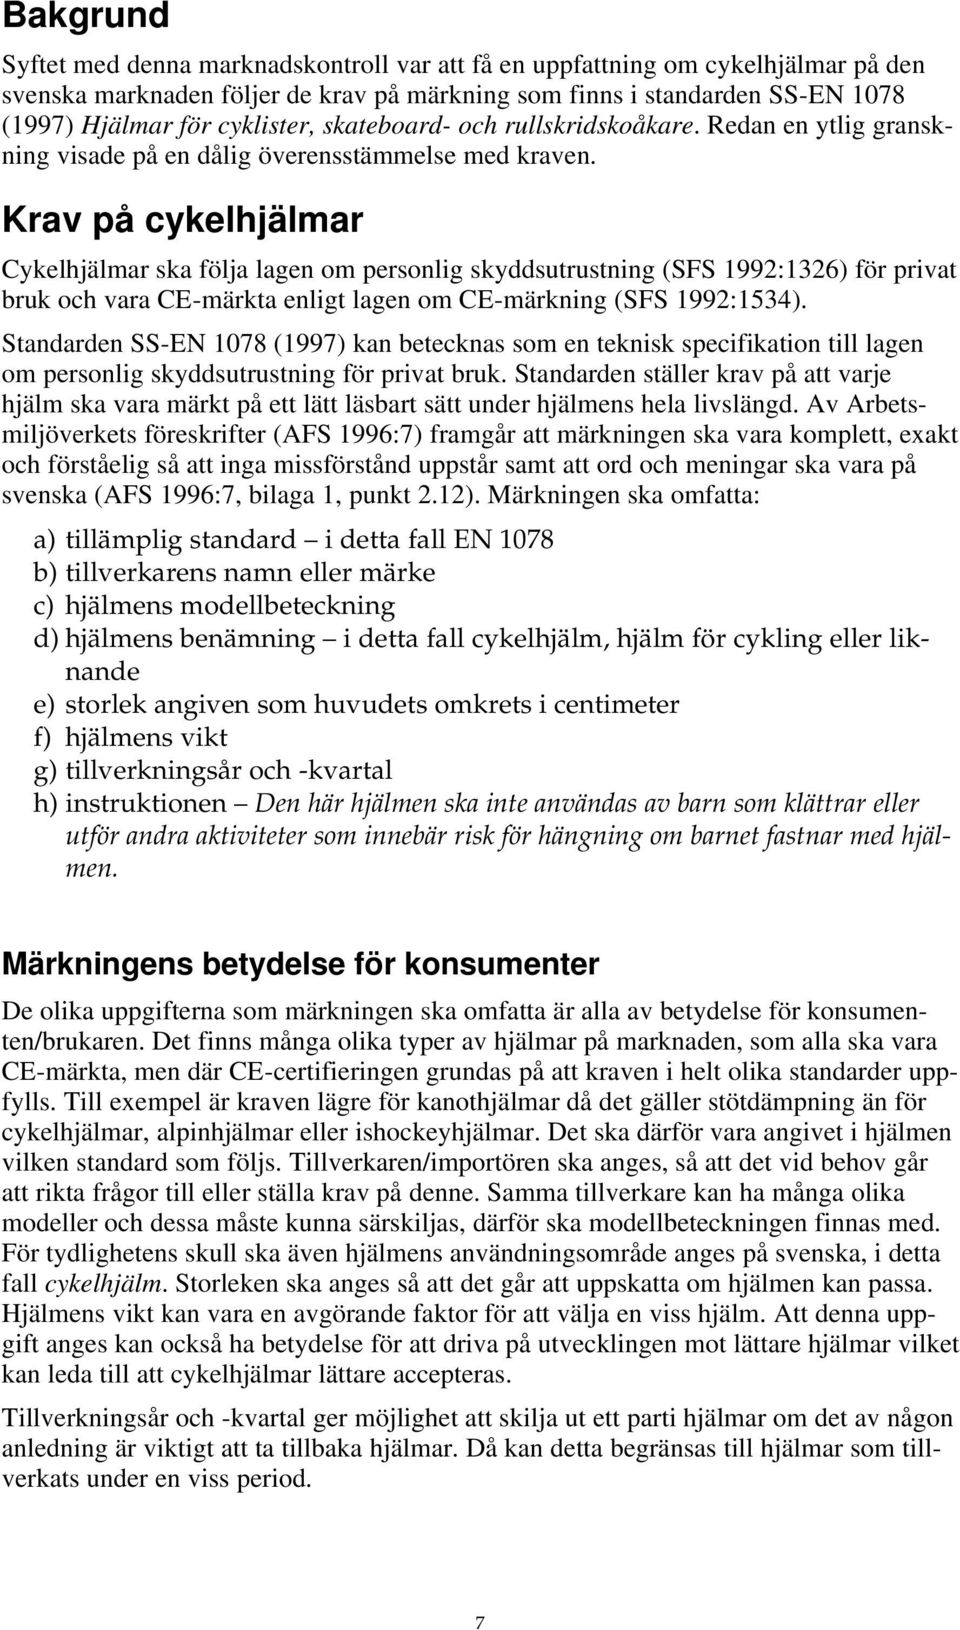 Krav på cykelhjälmar Cykelhjälmar ska följa lagen om personlig skyddsutrustning (SFS 1992:1326) för privat bruk och vara CE-märkta enligt lagen om CE-märkning (SFS 1992:1534).